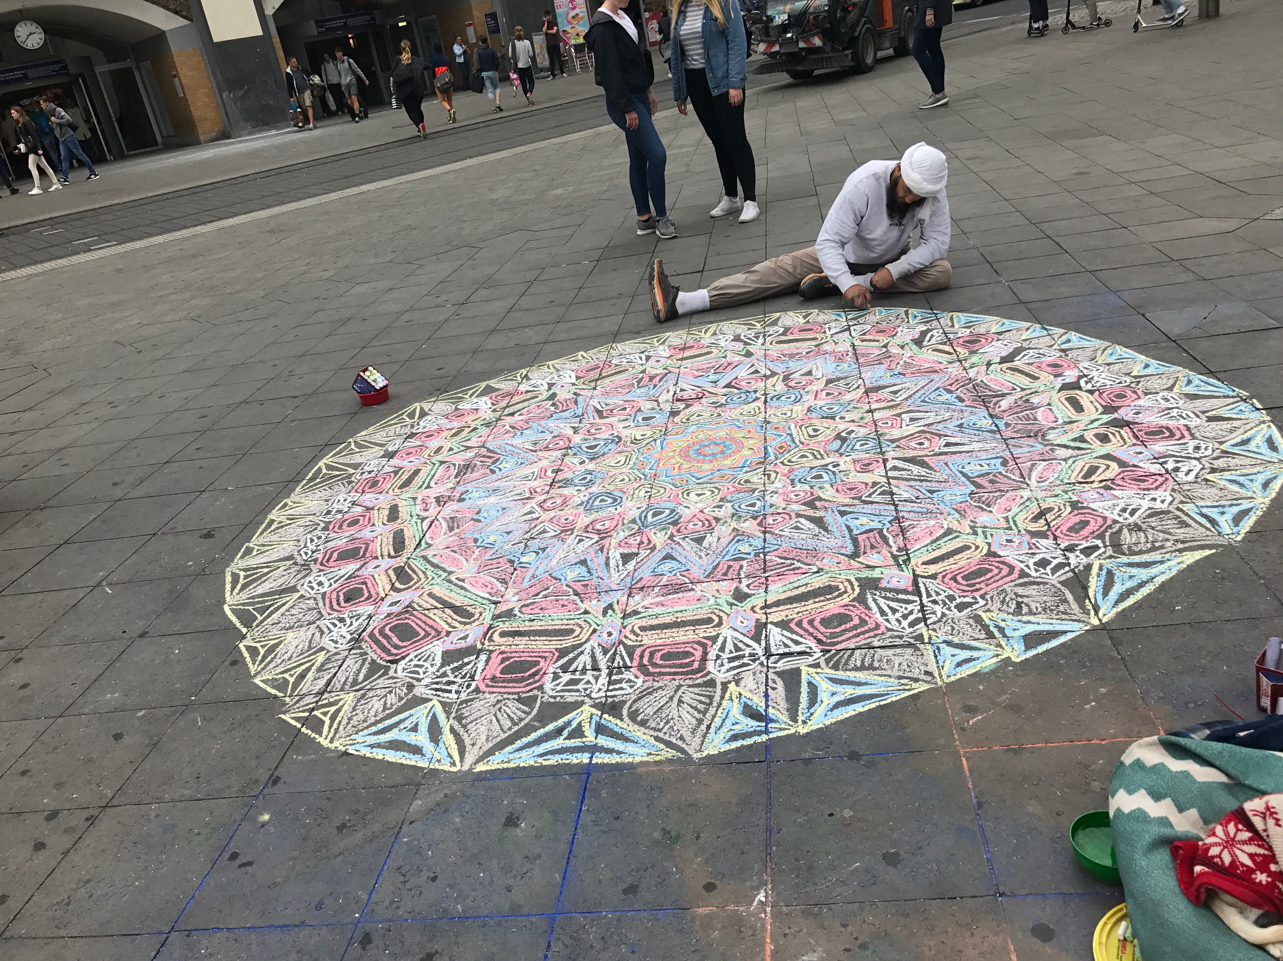 Sikh street artist